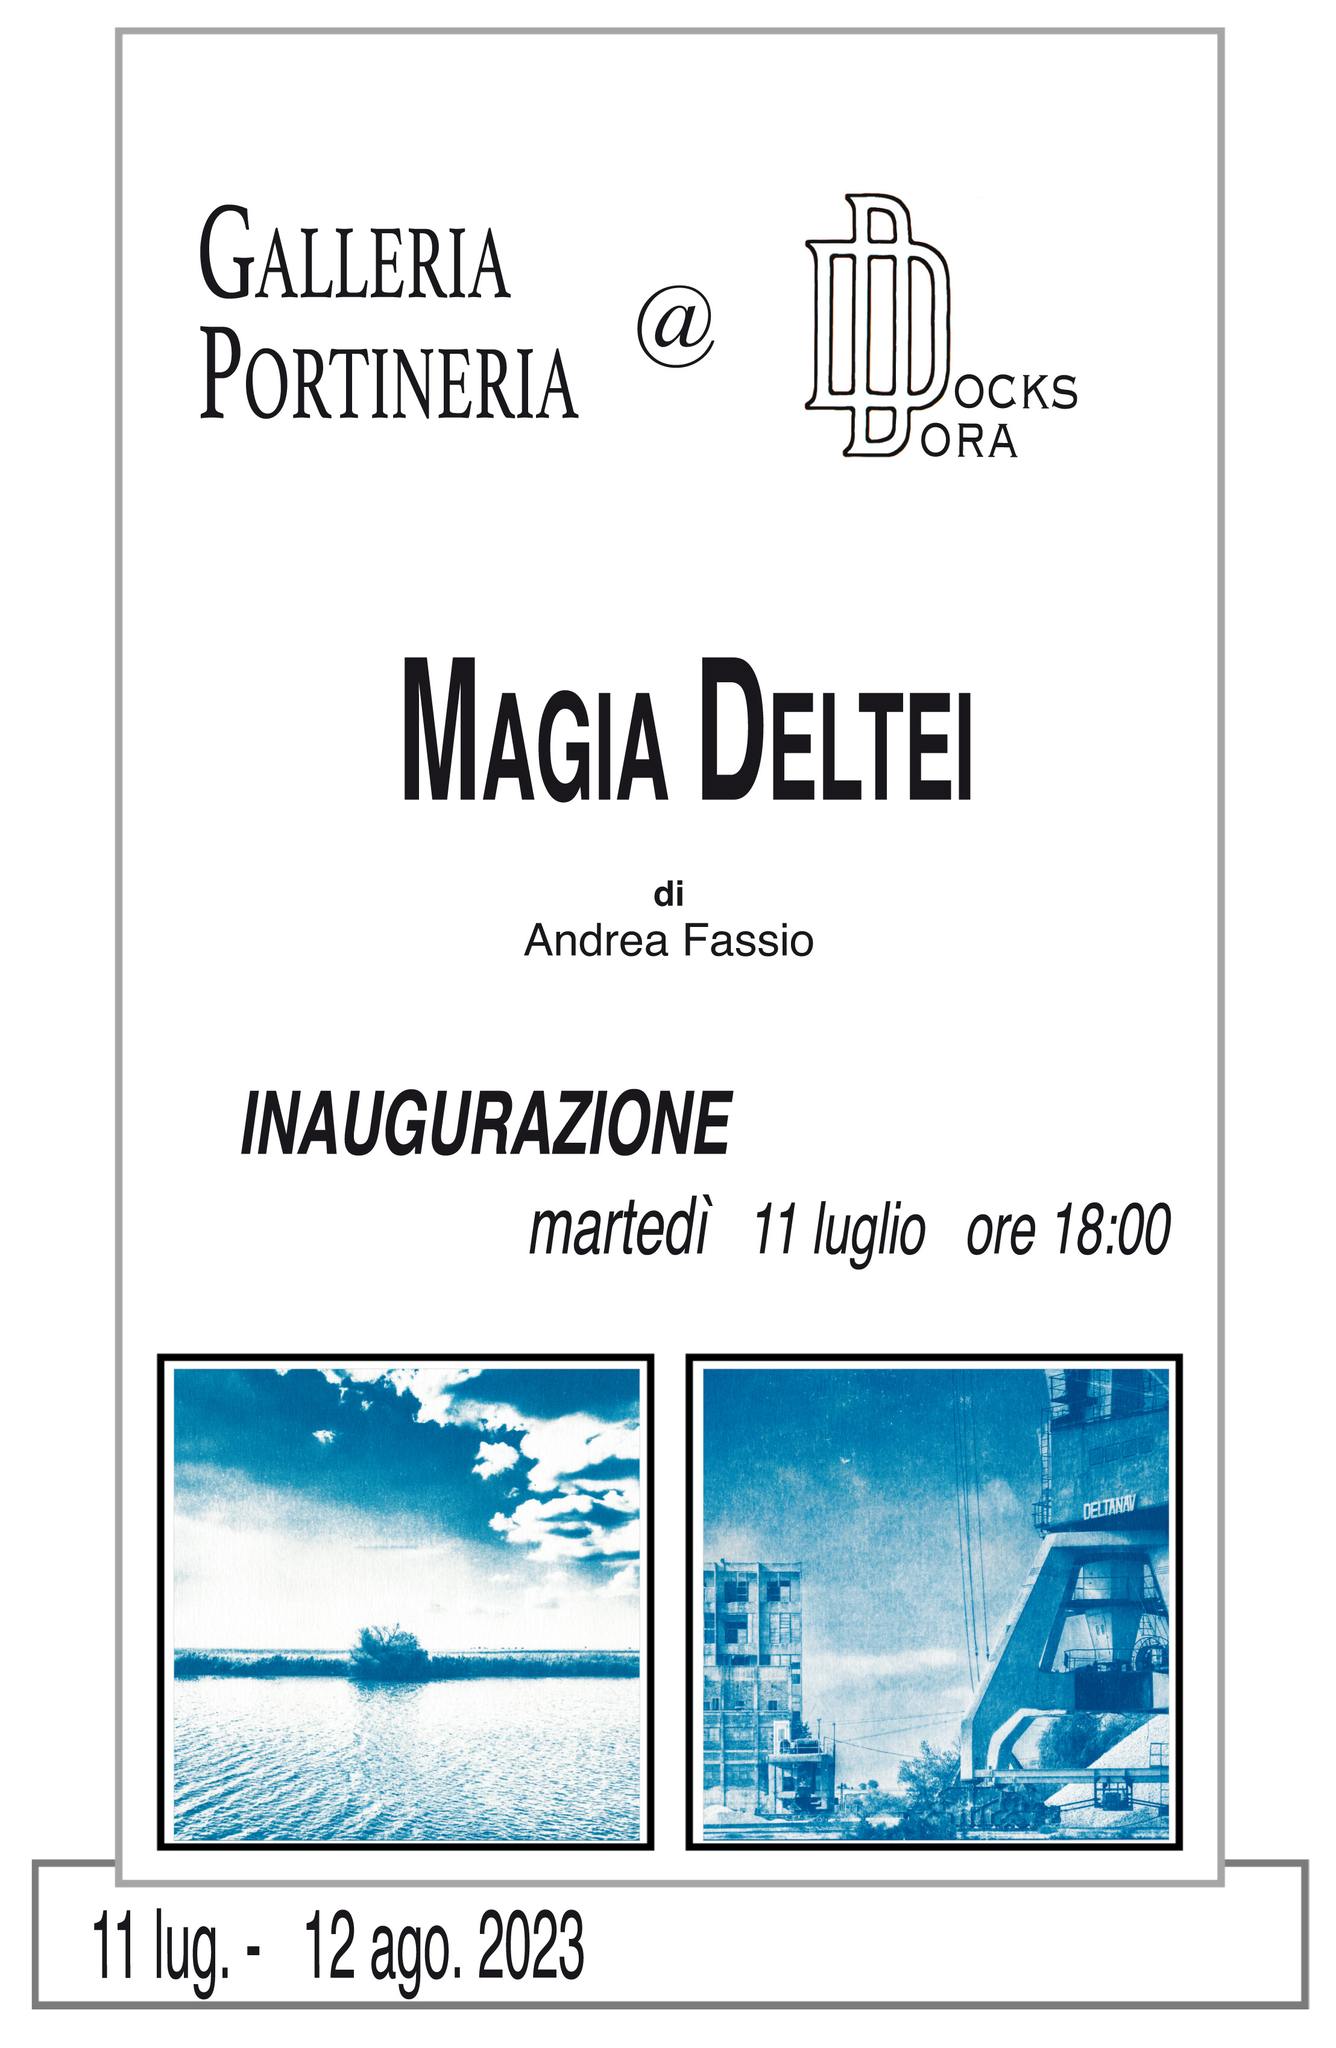 Mostra fotografica "Magia Deltei" alla Galleria Portineria